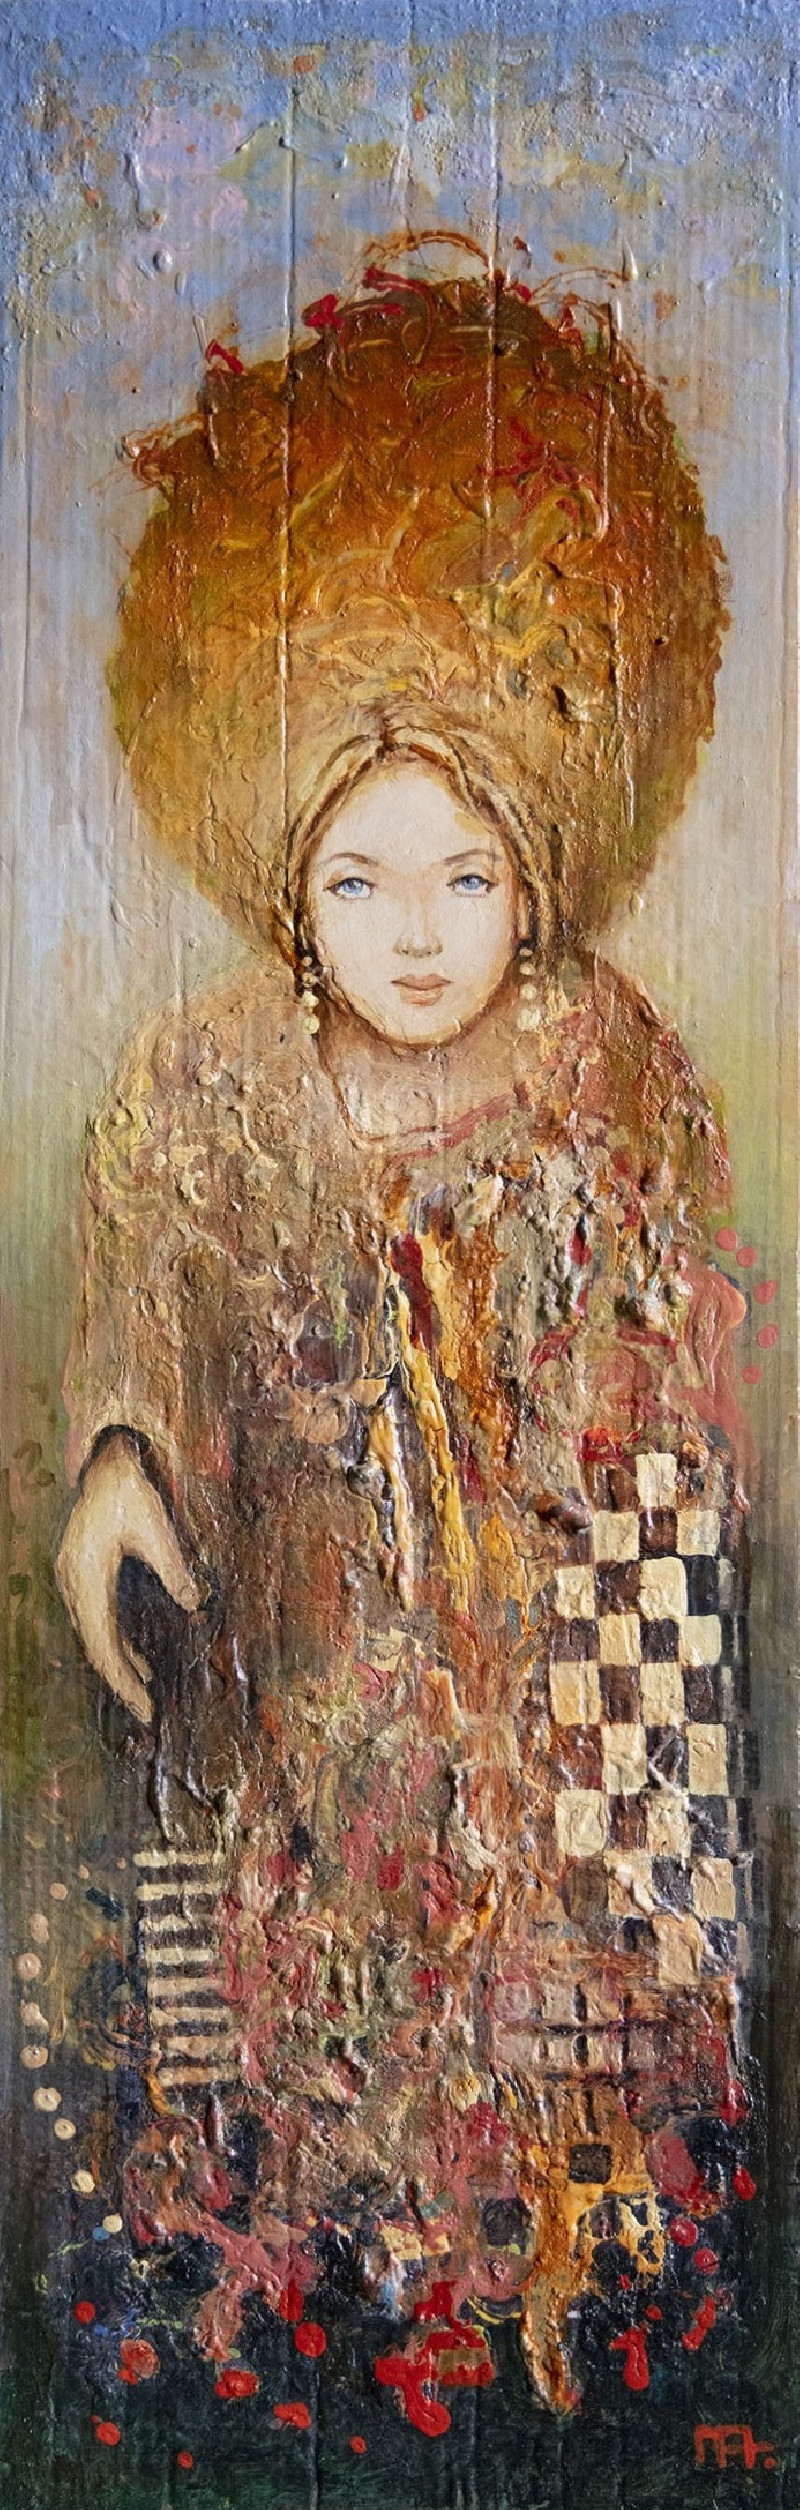 Arūnas Miliukas tapytas paveikslas Nepažįstamoji, Moters grožis , paveikslai internetu